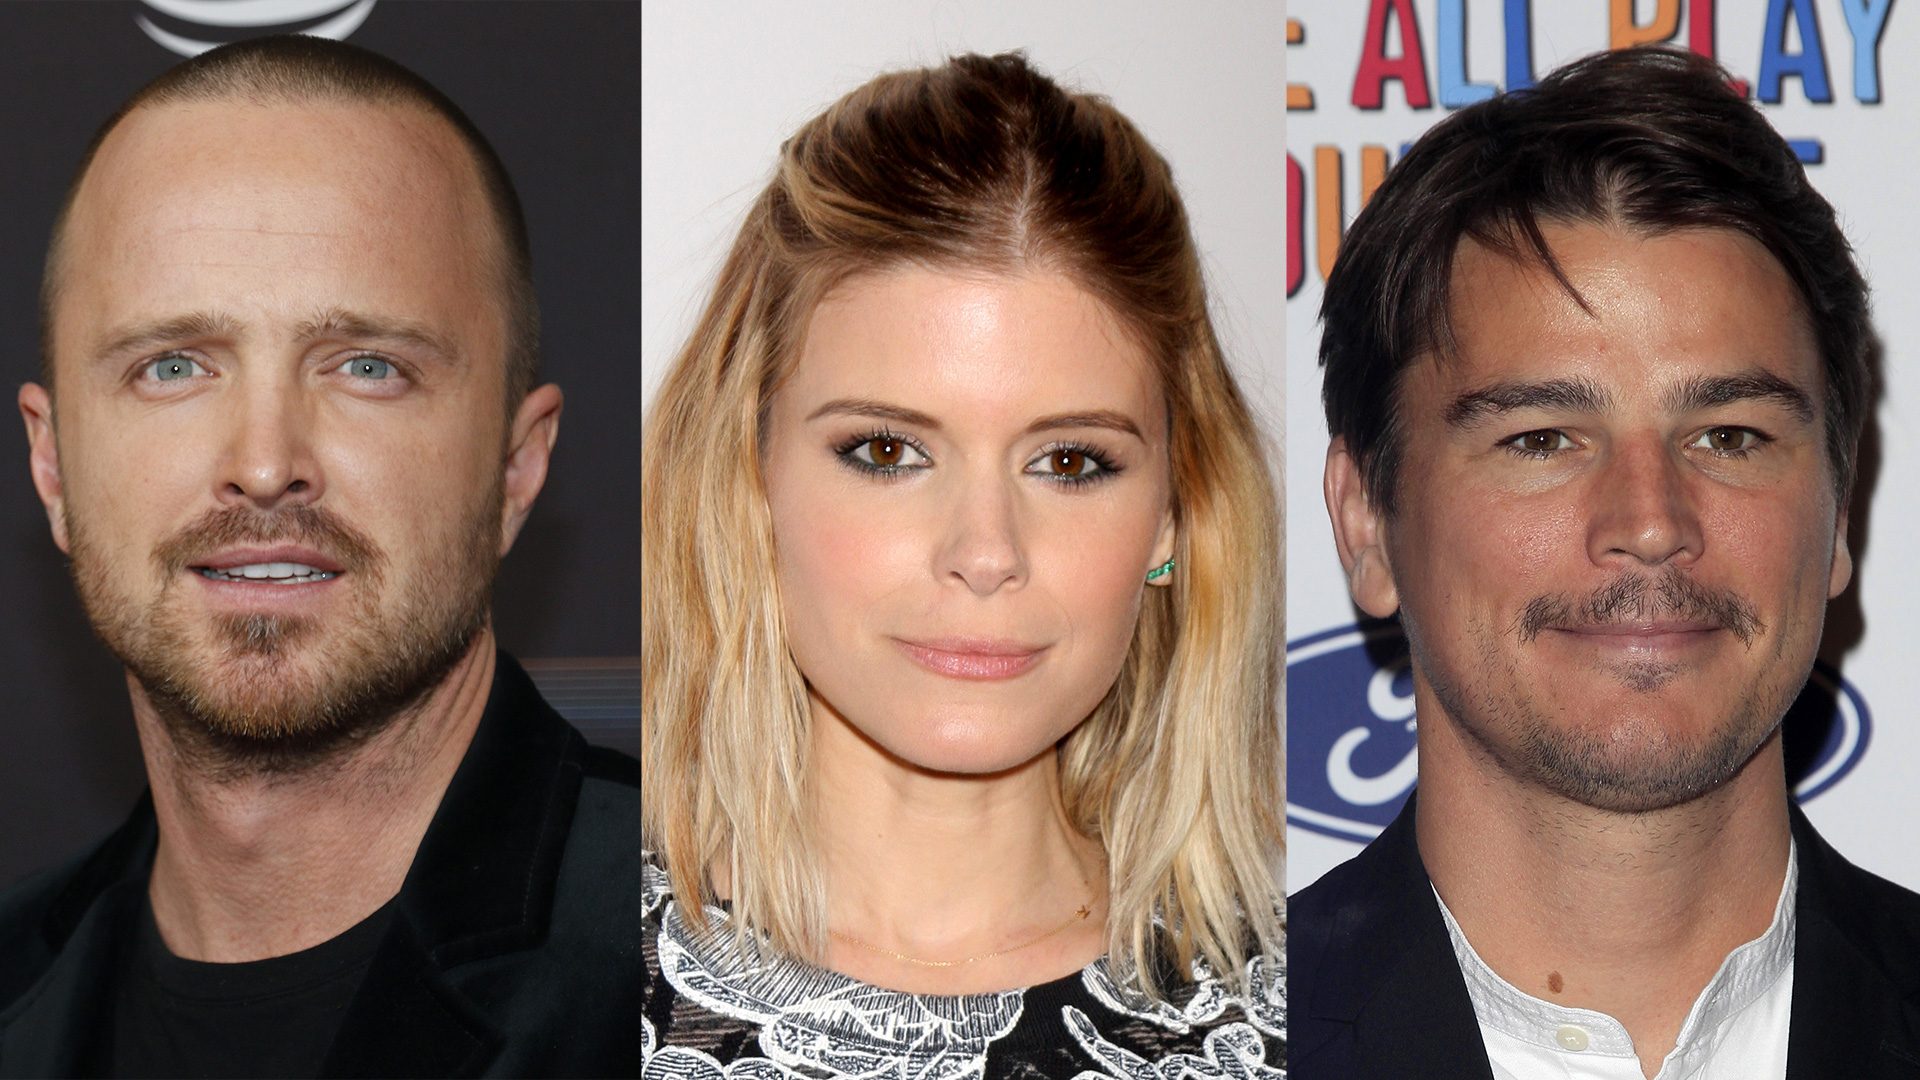 'Black Mirror' announces starstudded cast for 6th season